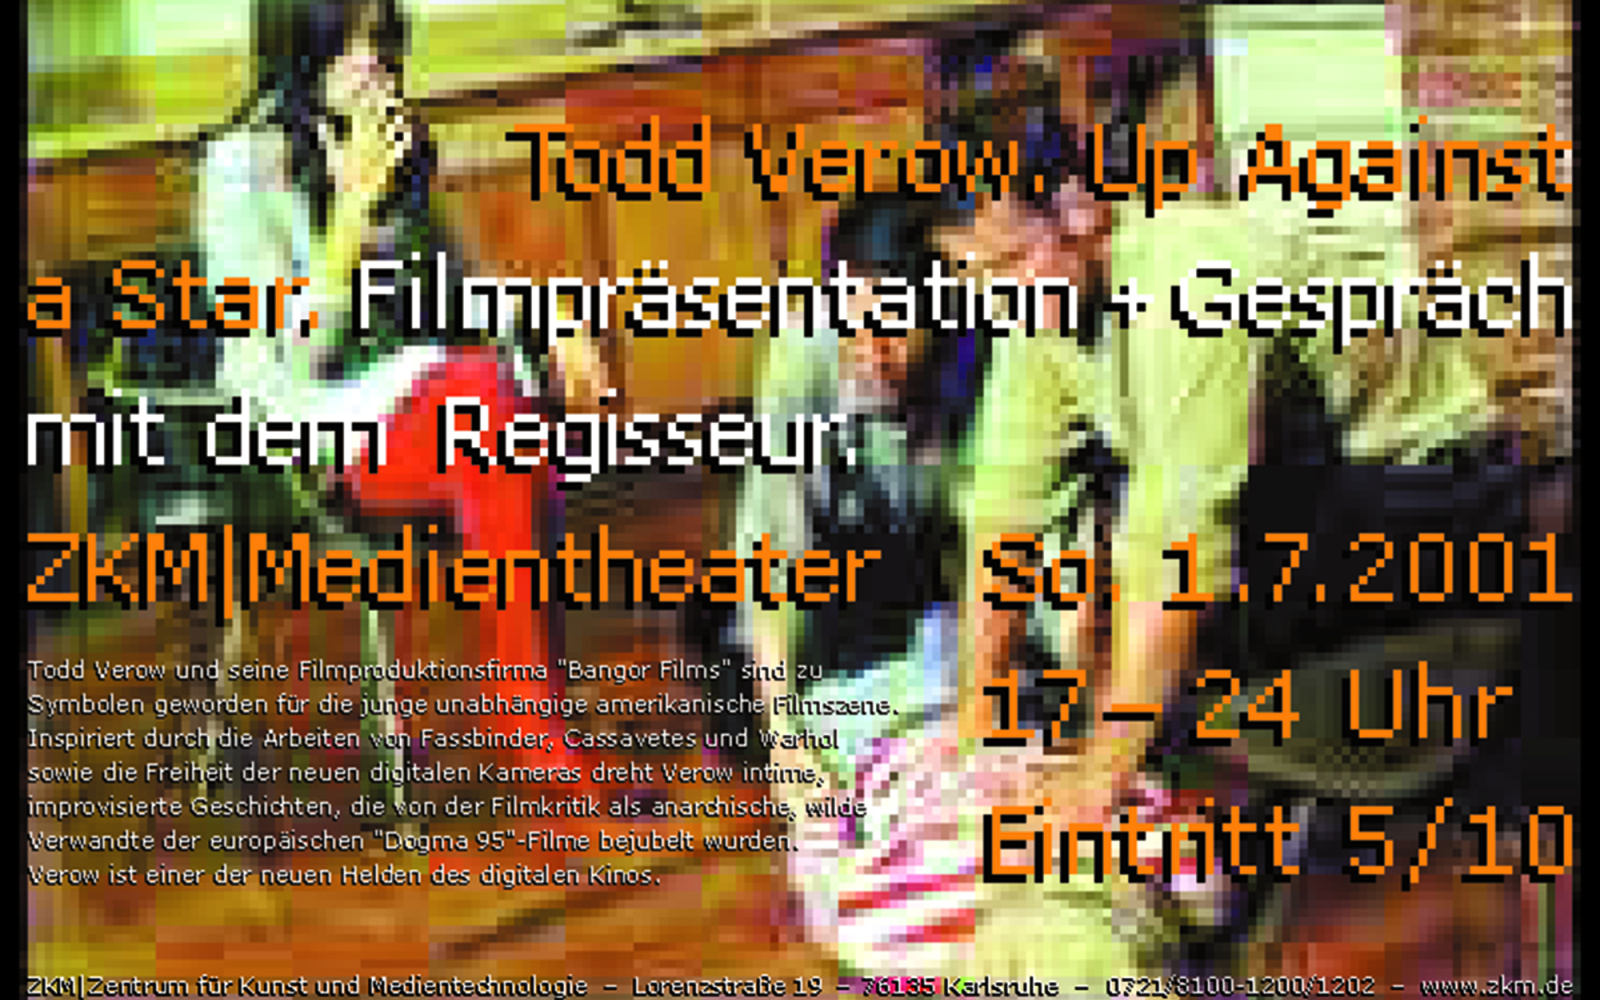 Plakat zur Veranstaltung »Todd Verow - Up Against a Star«: Im Hintergrund ein Filmstill mit drei Personen.